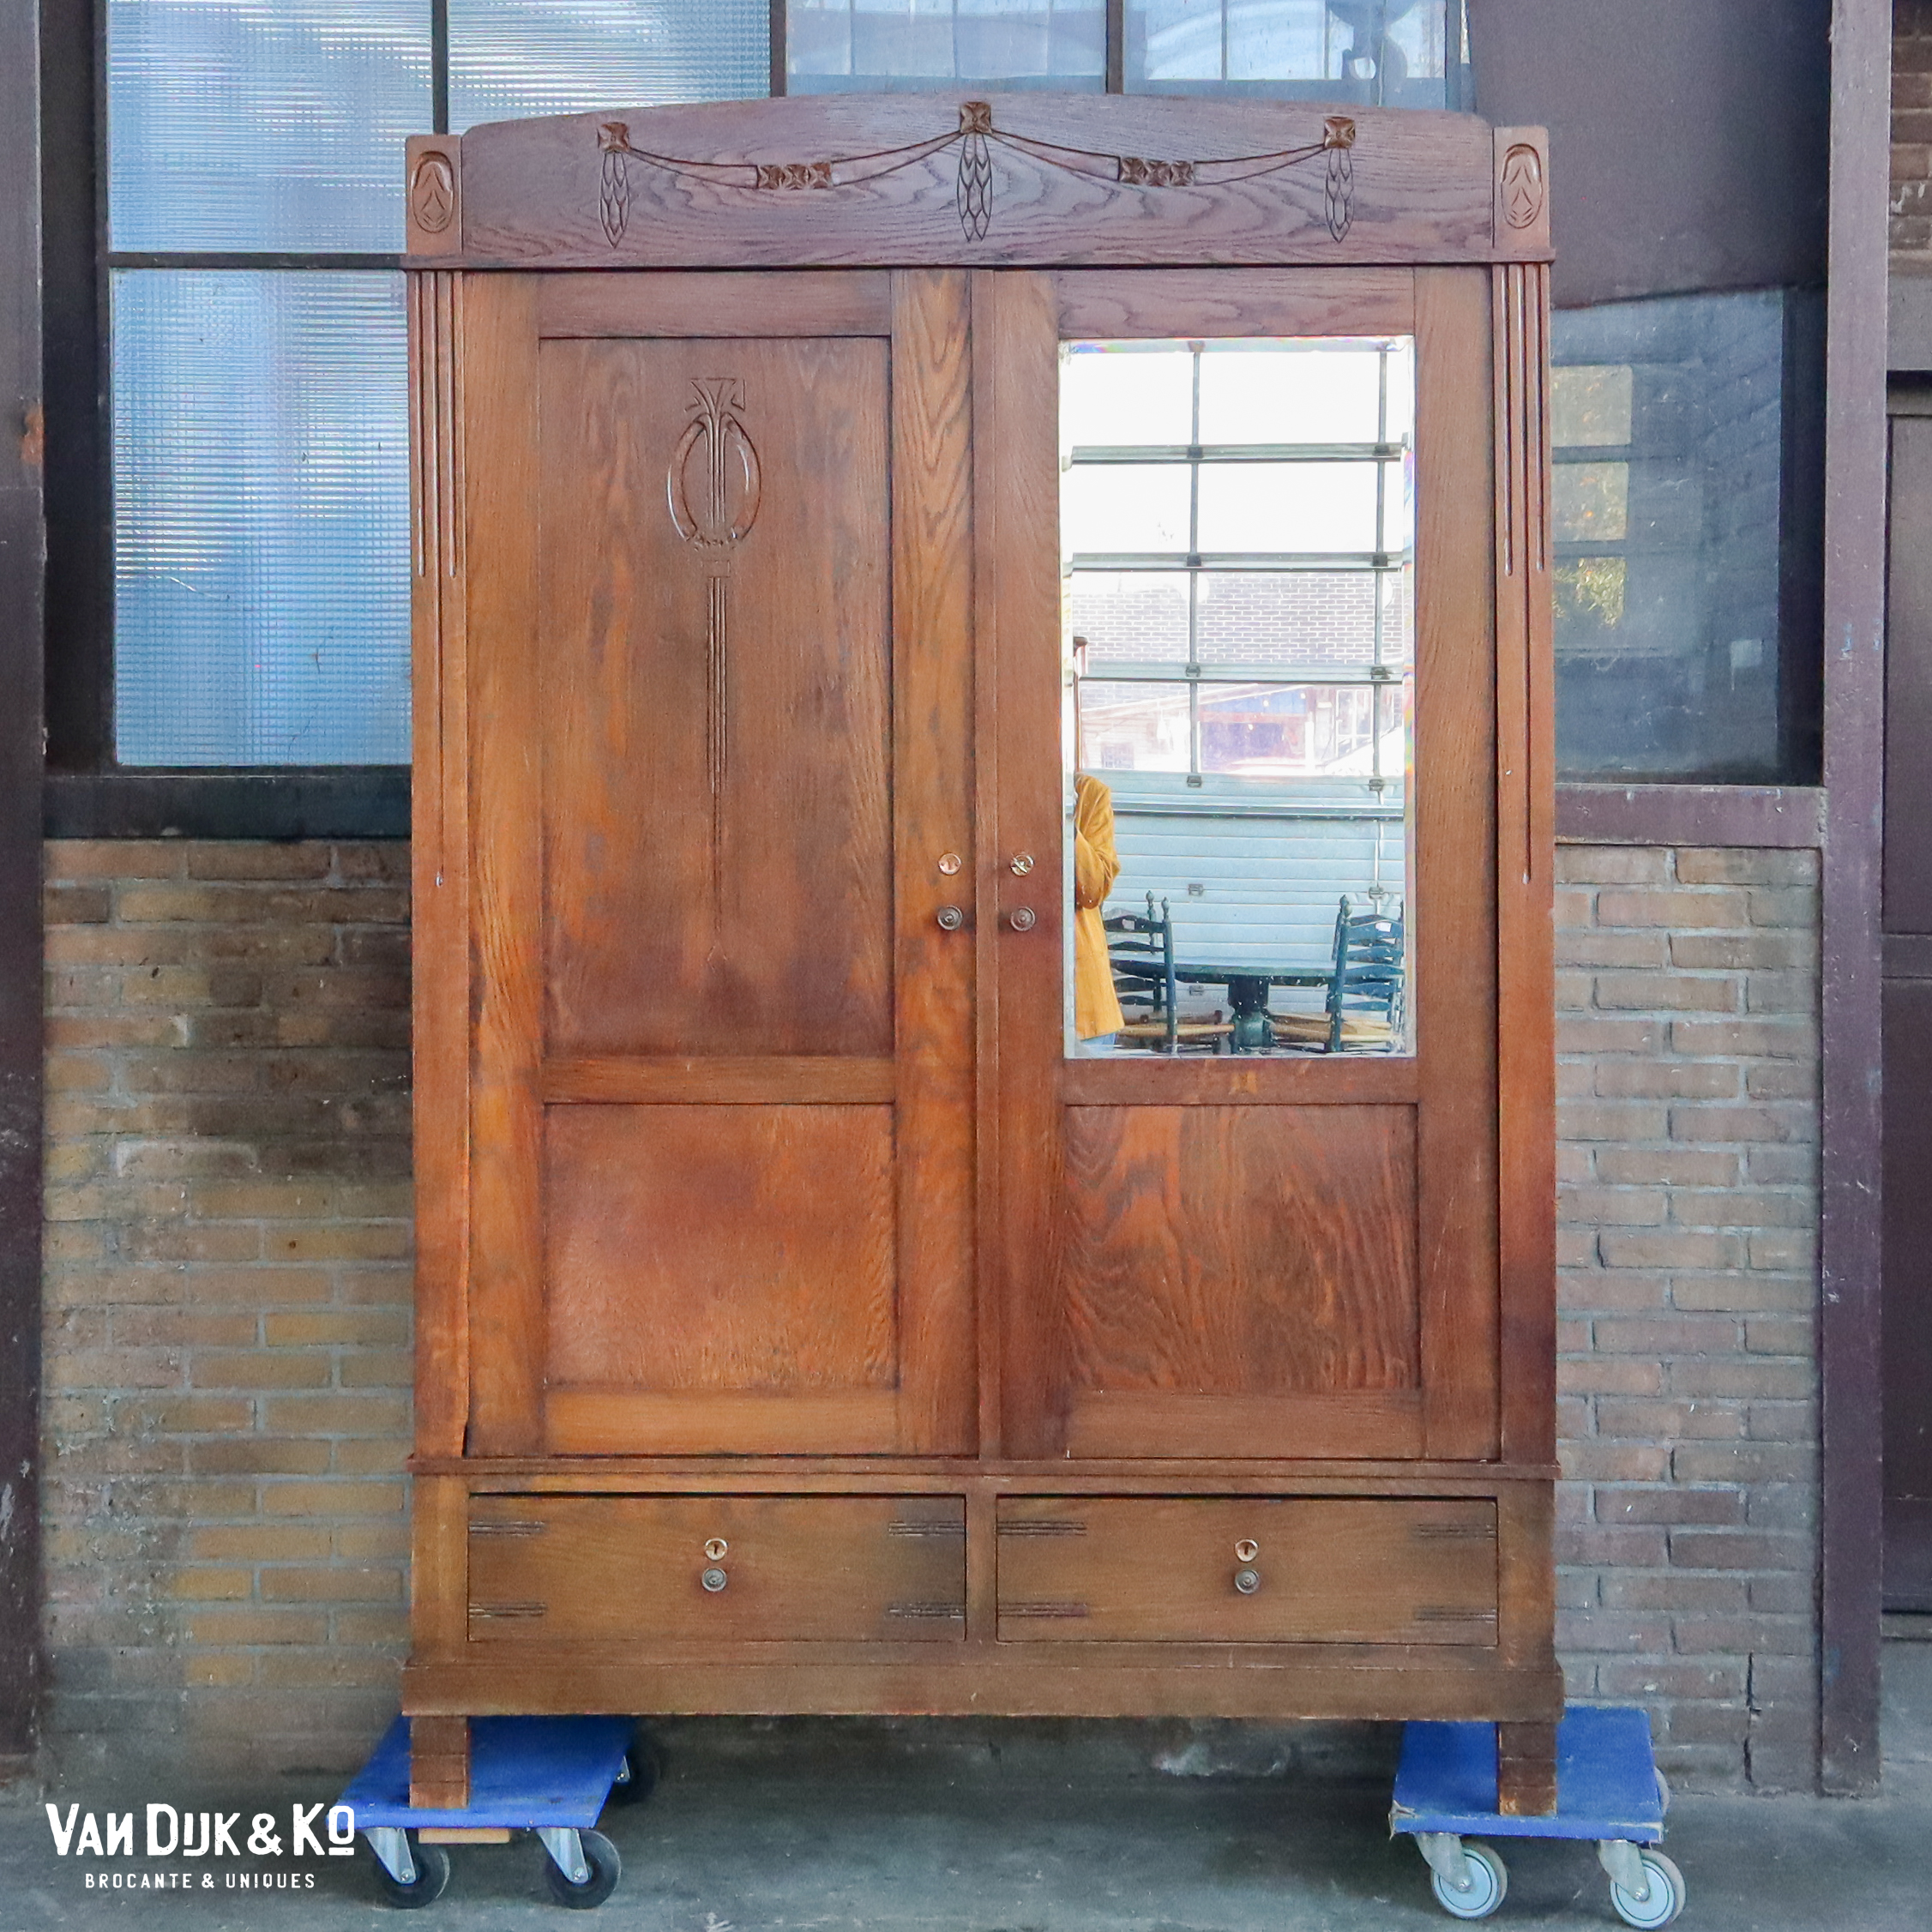 Muf Jet aansporing Antieke kledingkast met spiegel – demontabel » Van Dijk & Ko